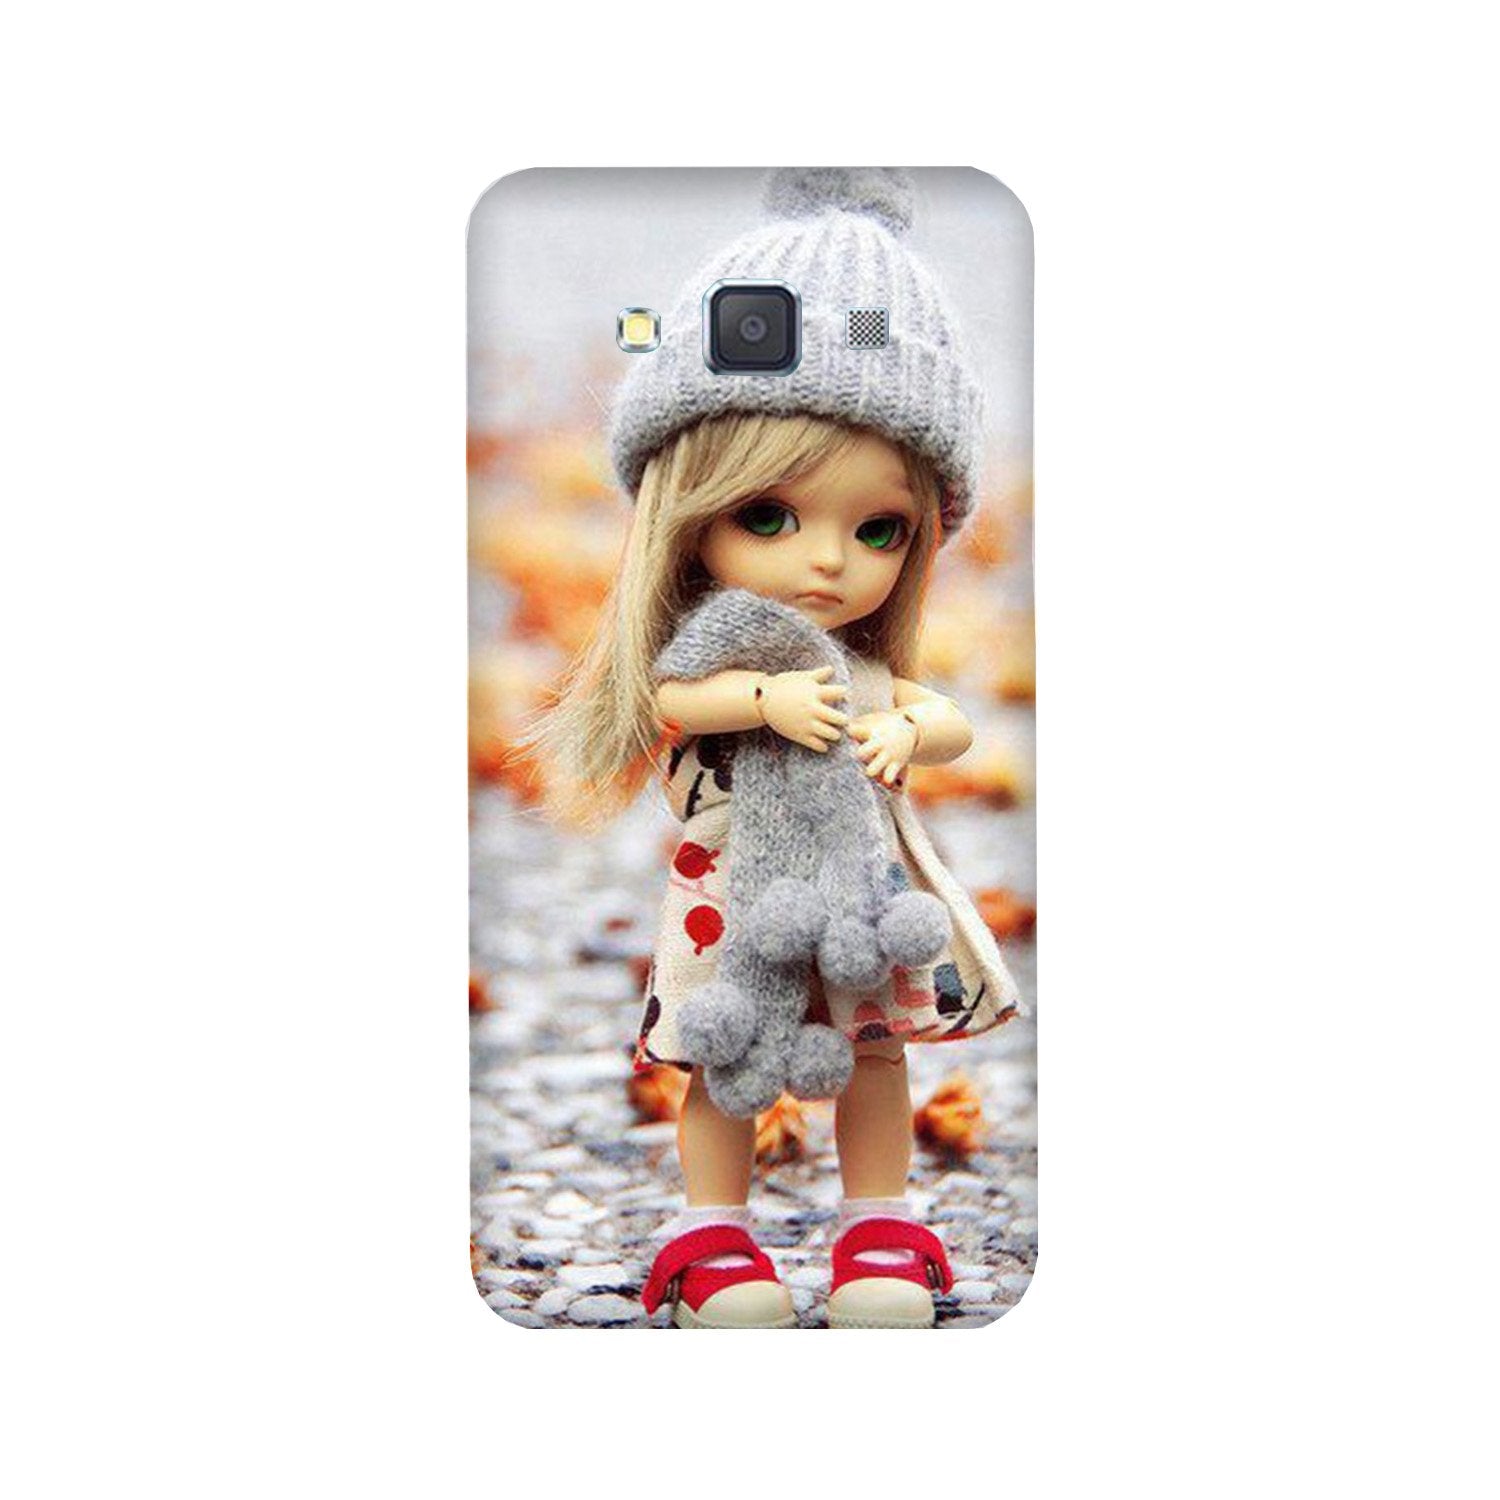 Cute Doll Case for Galaxy A3 (2015)